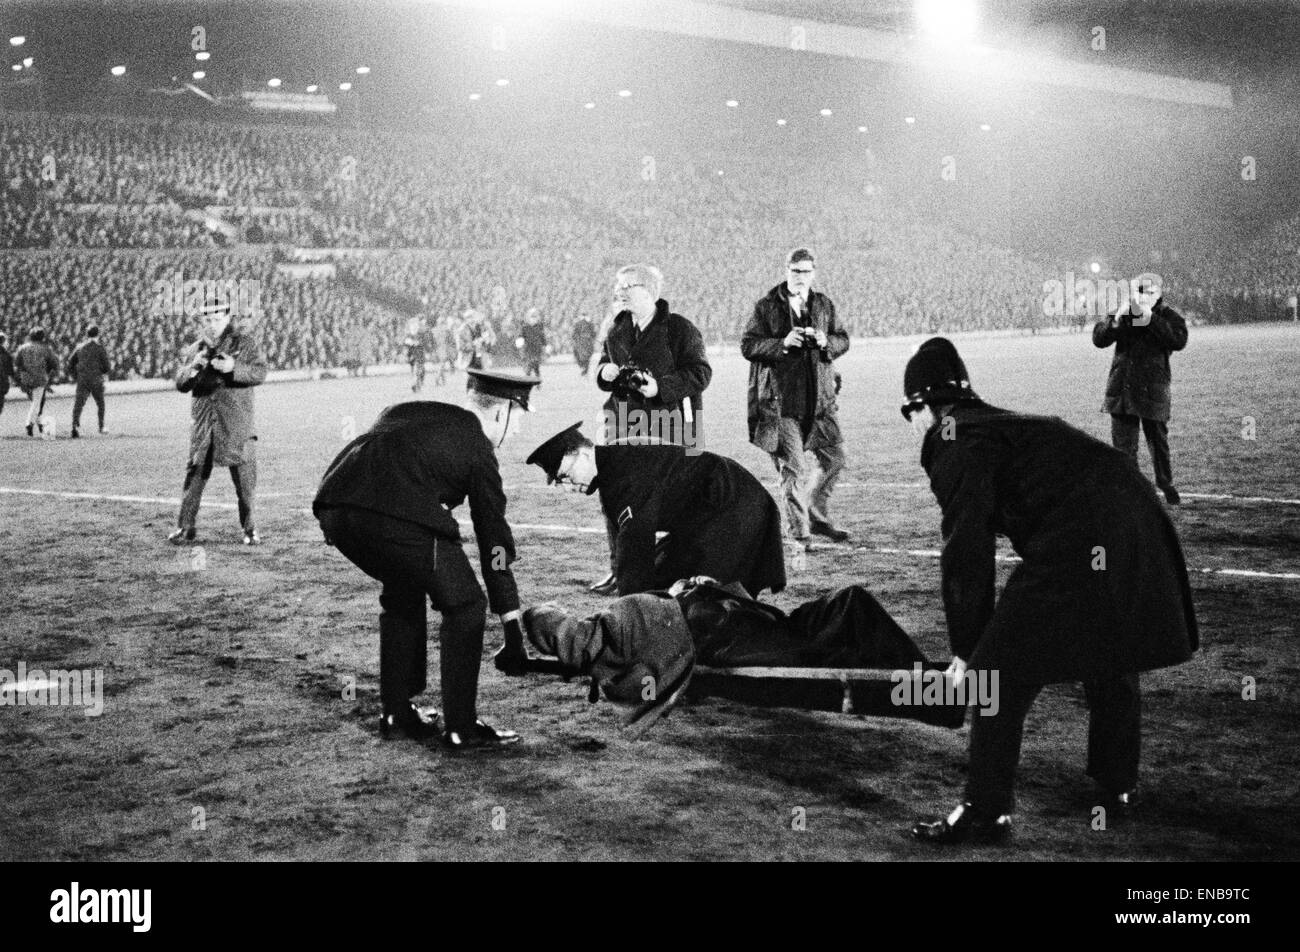 FA Cup fünften Runde Replay. Leeds United 1 v. Sunderland 1. Besucherrekord von fast 58 000 Fans an der Elland Road führte zu Barriere bricht zusammen und verletzt auf den Terrassen-fans. 15. März 1967. Stockfoto